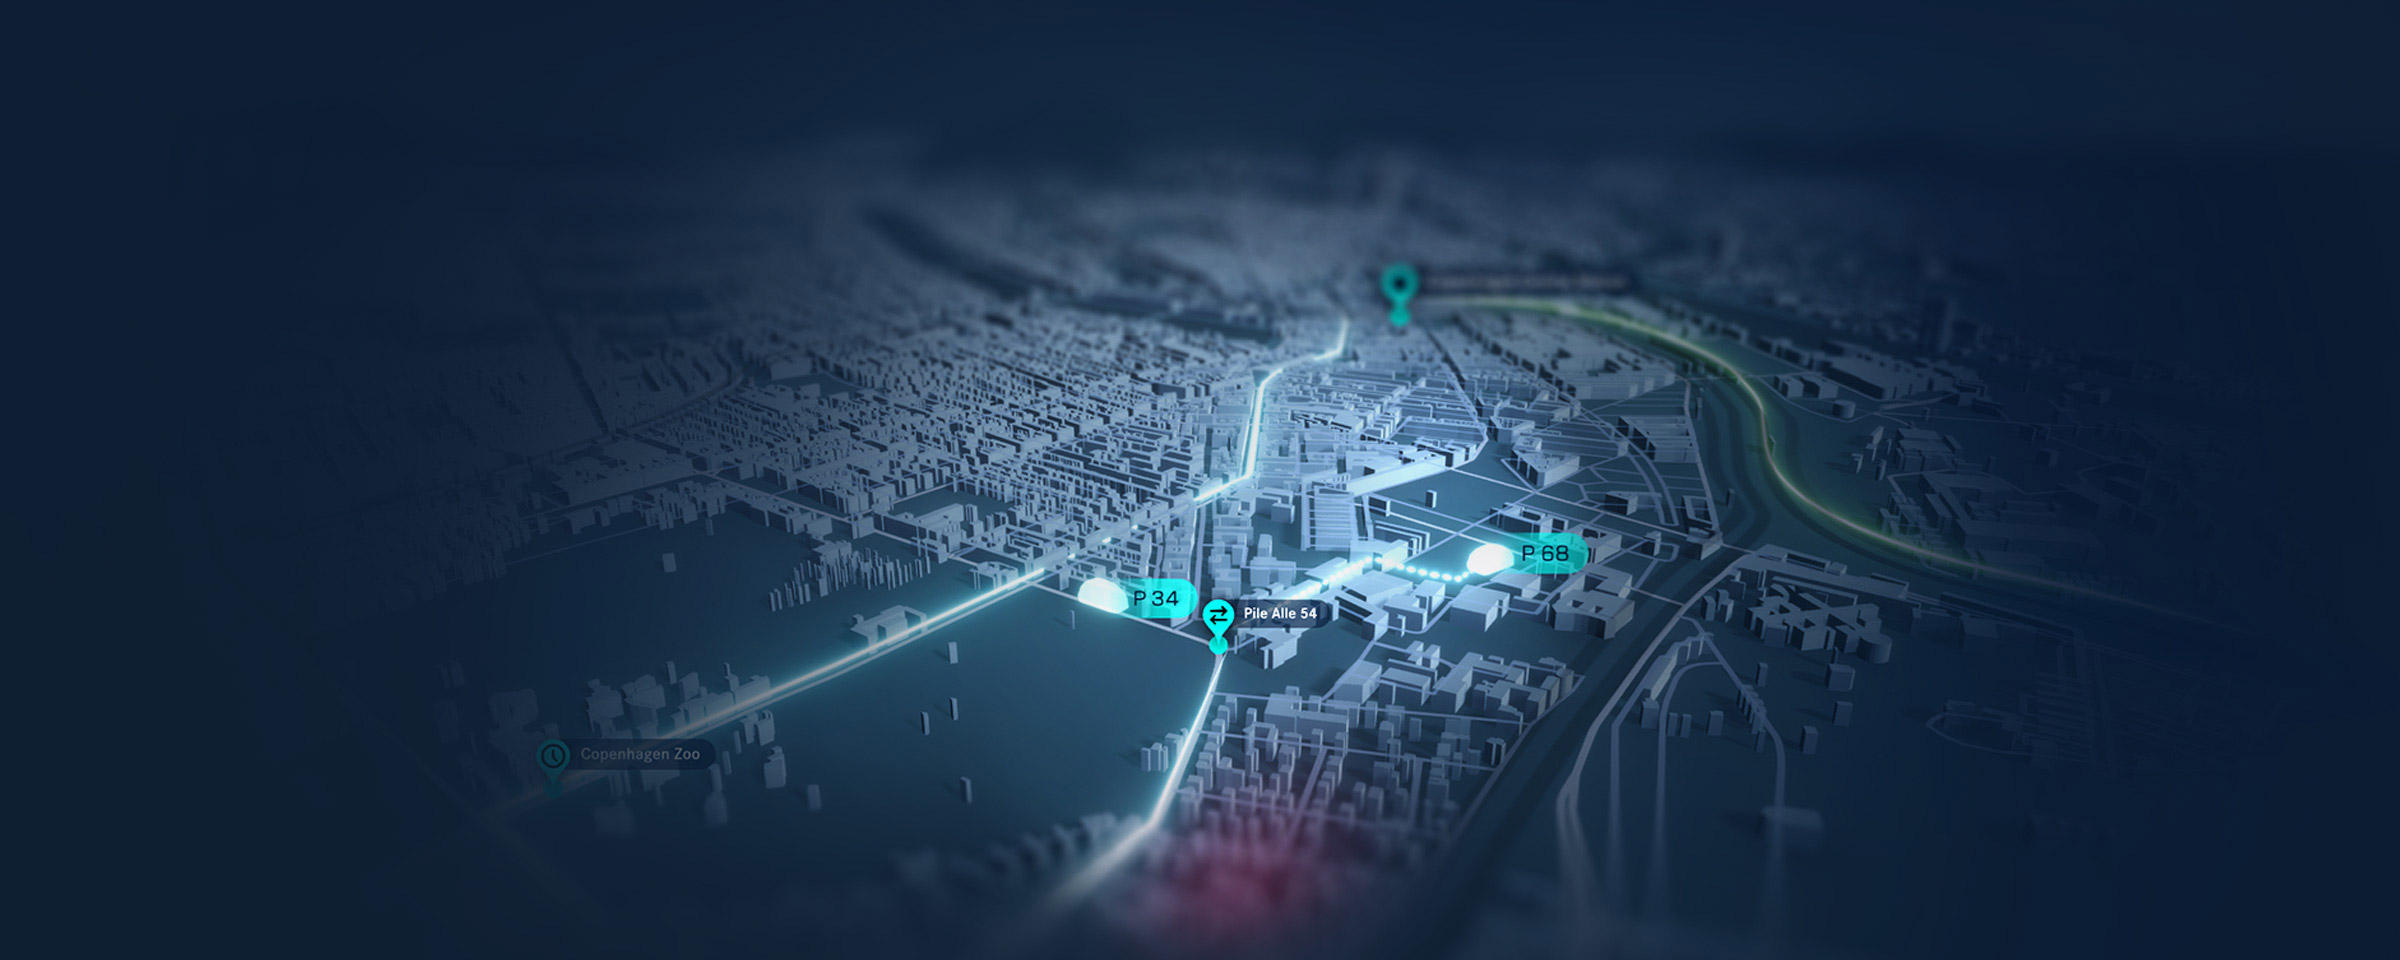 Blaue 3D Stadtkarte mit Routen und Zielpunkten